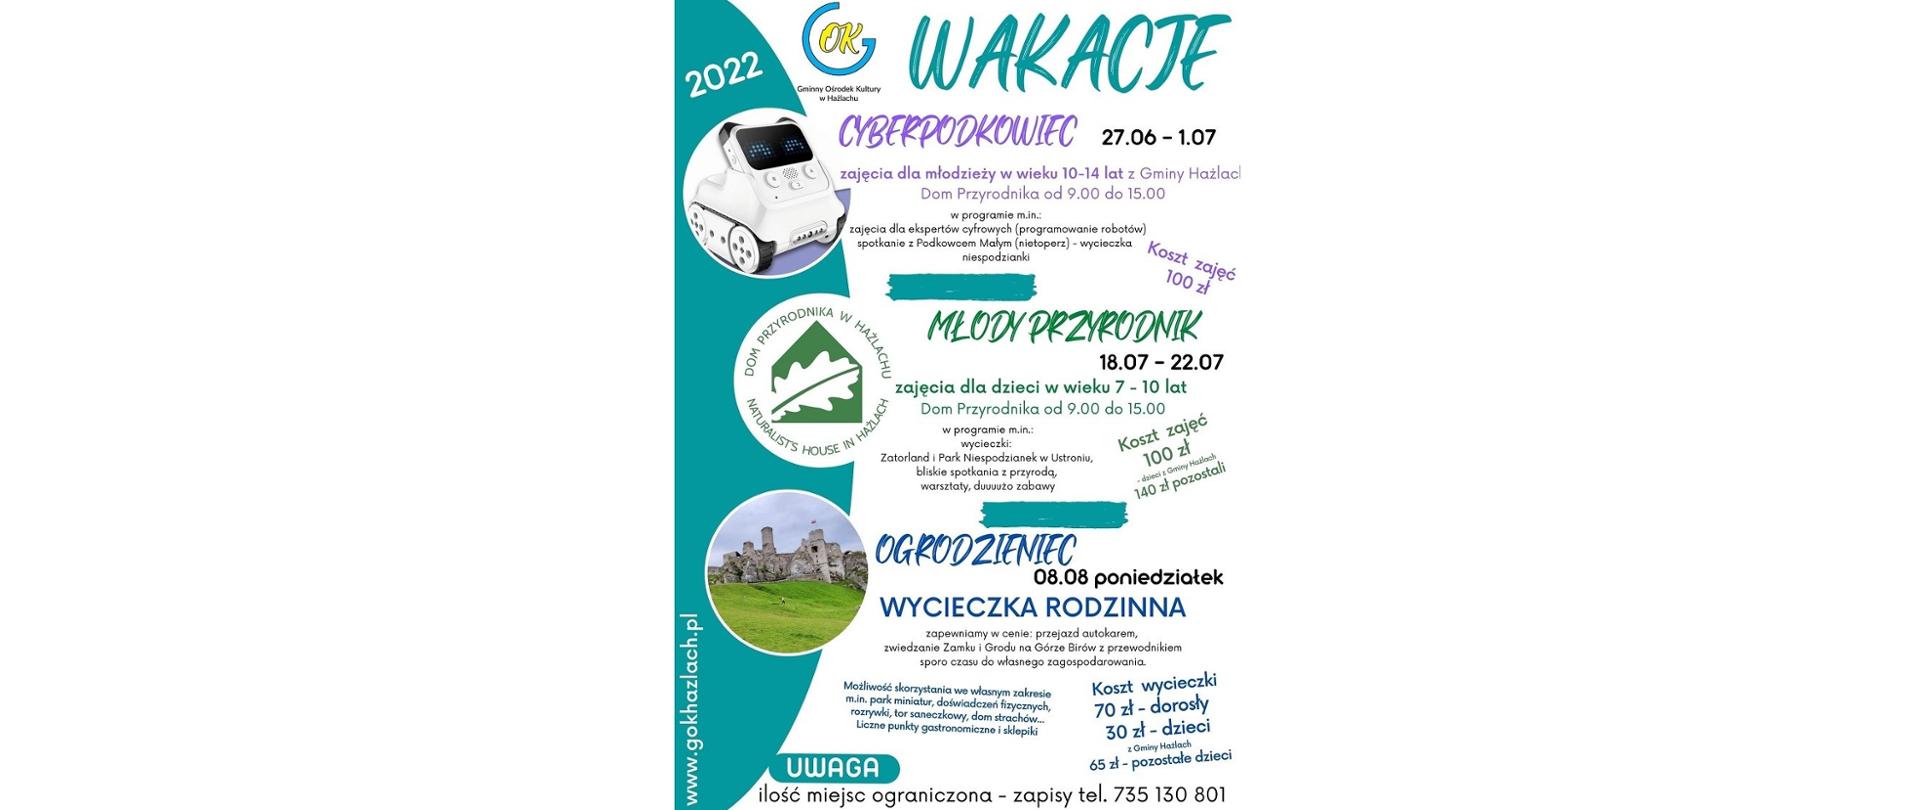 Plakat informacyjny GOK Hażlach „Wakacje 2022”. Trzy oferty: „Cyberpodkowiec”, „Młody przyrodnik”, „Ogrodzieniec” oraz materiały ilustracyjne do każdej akcji 